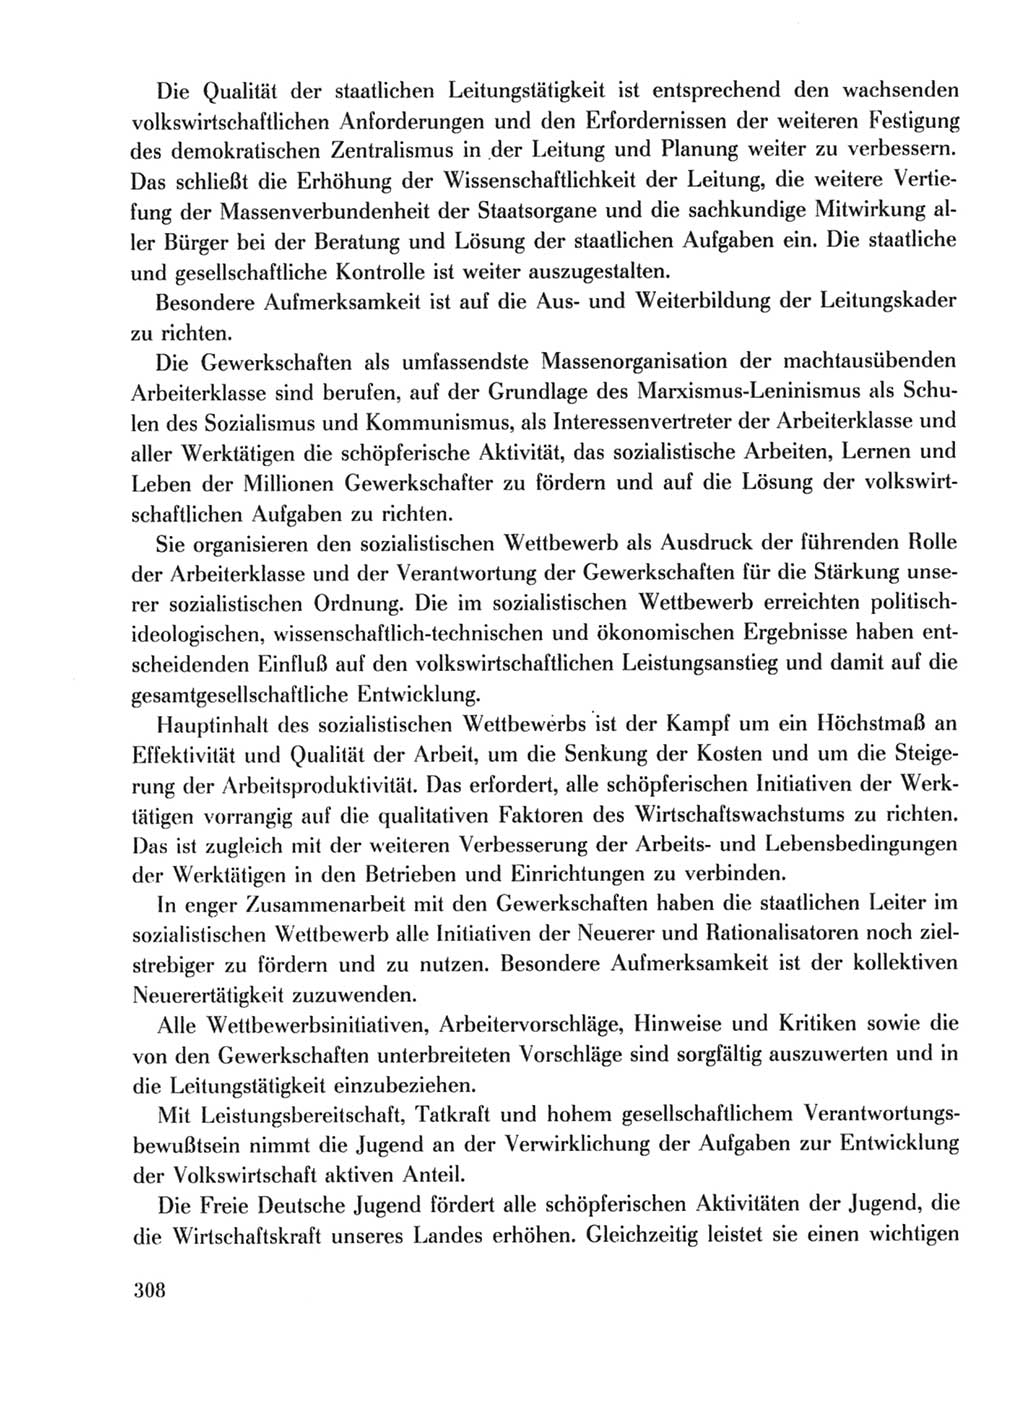 Protokoll der Verhandlungen des Ⅹ. Parteitages der Sozialistischen Einheitspartei Deutschlands (SED) [Deutsche Demokratische Republik (DDR)] 1981, Band 2, Seite 308 (Prot. Verh. Ⅹ. PT SED DDR 1981, Bd. 2, S. 308)